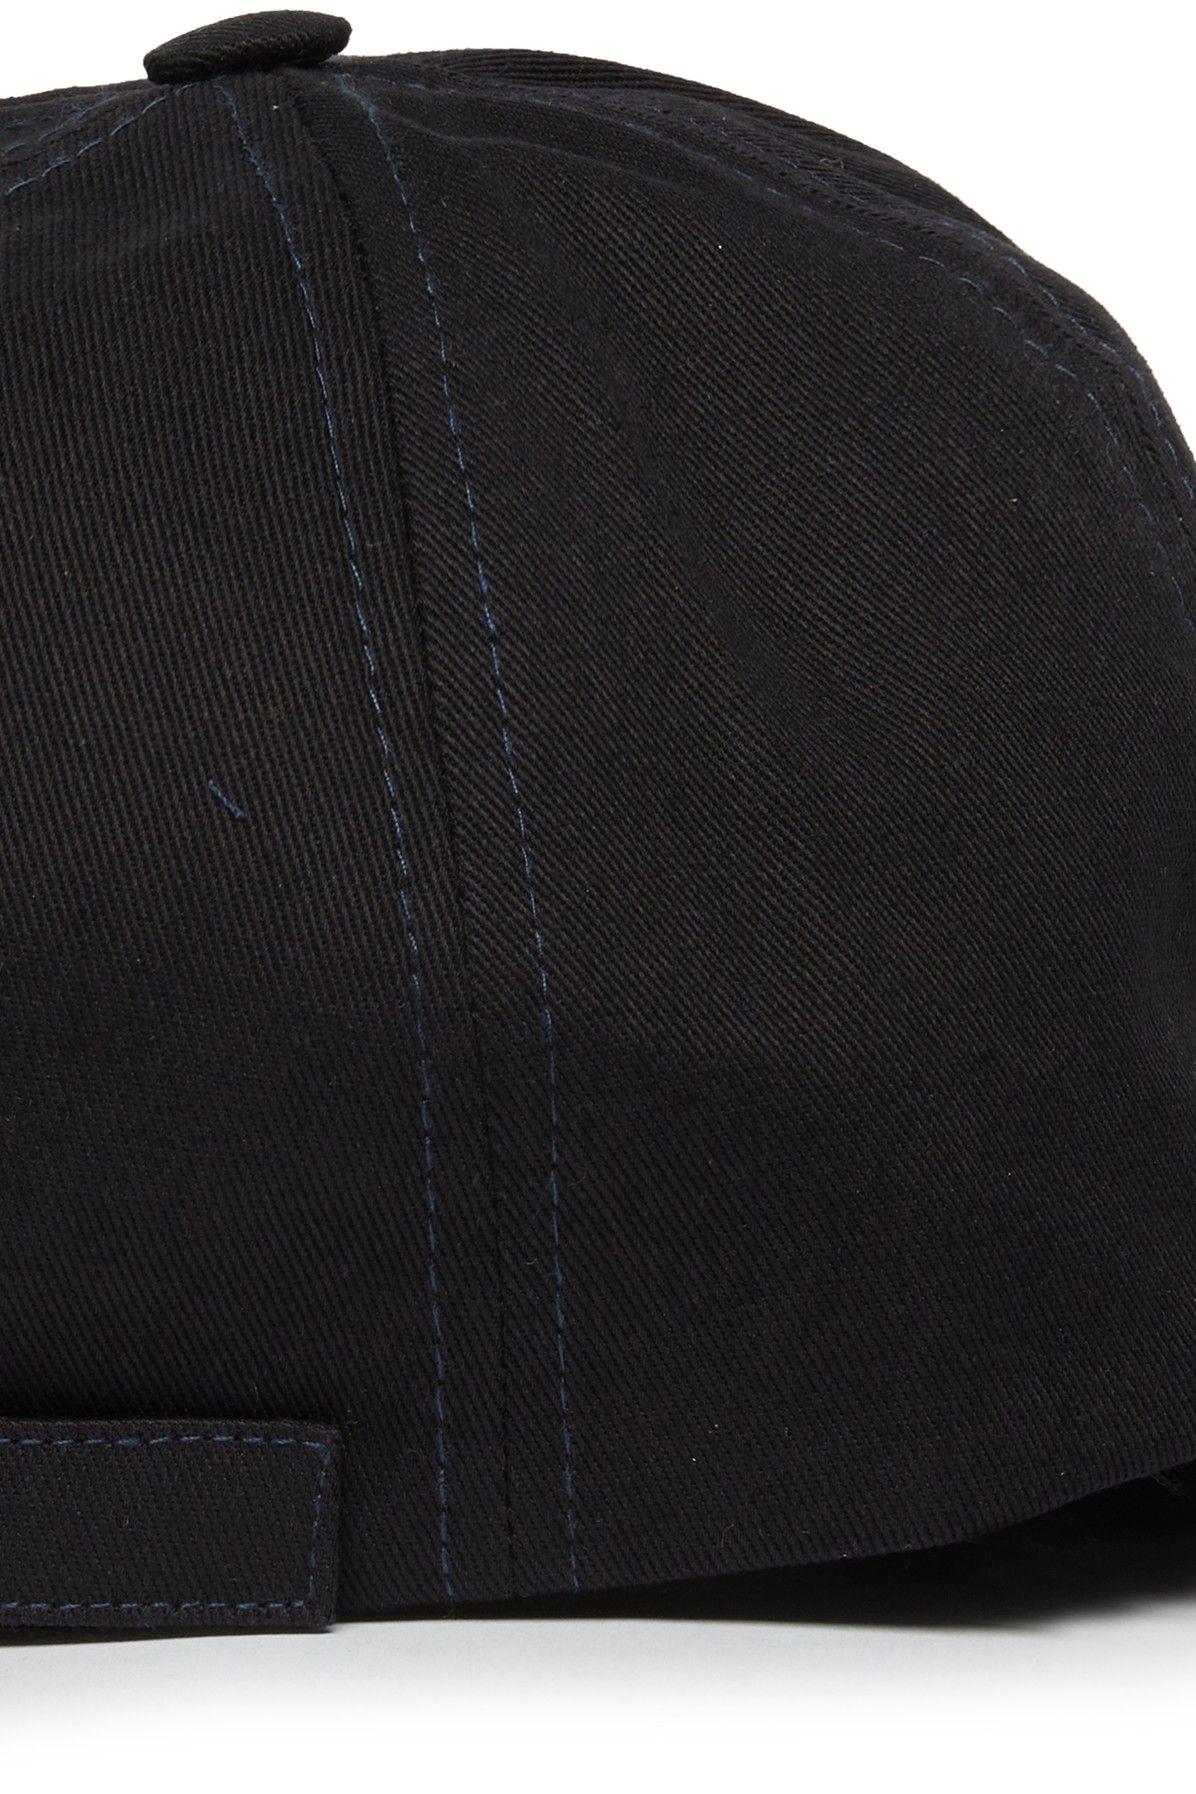 Maison Kitsuné Dressed Fox 6p Cap in Black for Men | Lyst